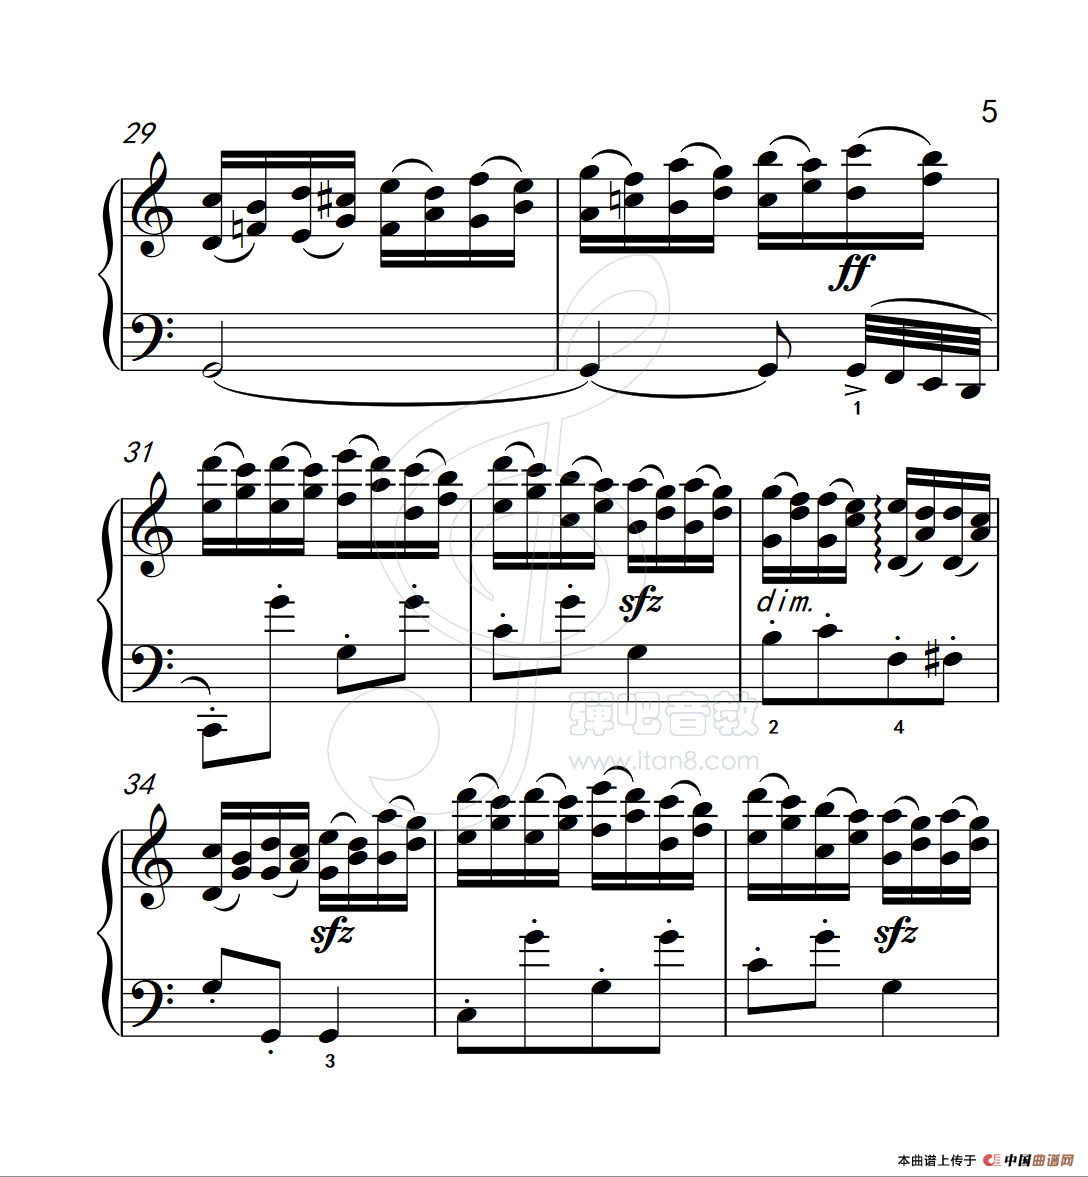 《练习曲 26》钢琴曲谱图分享